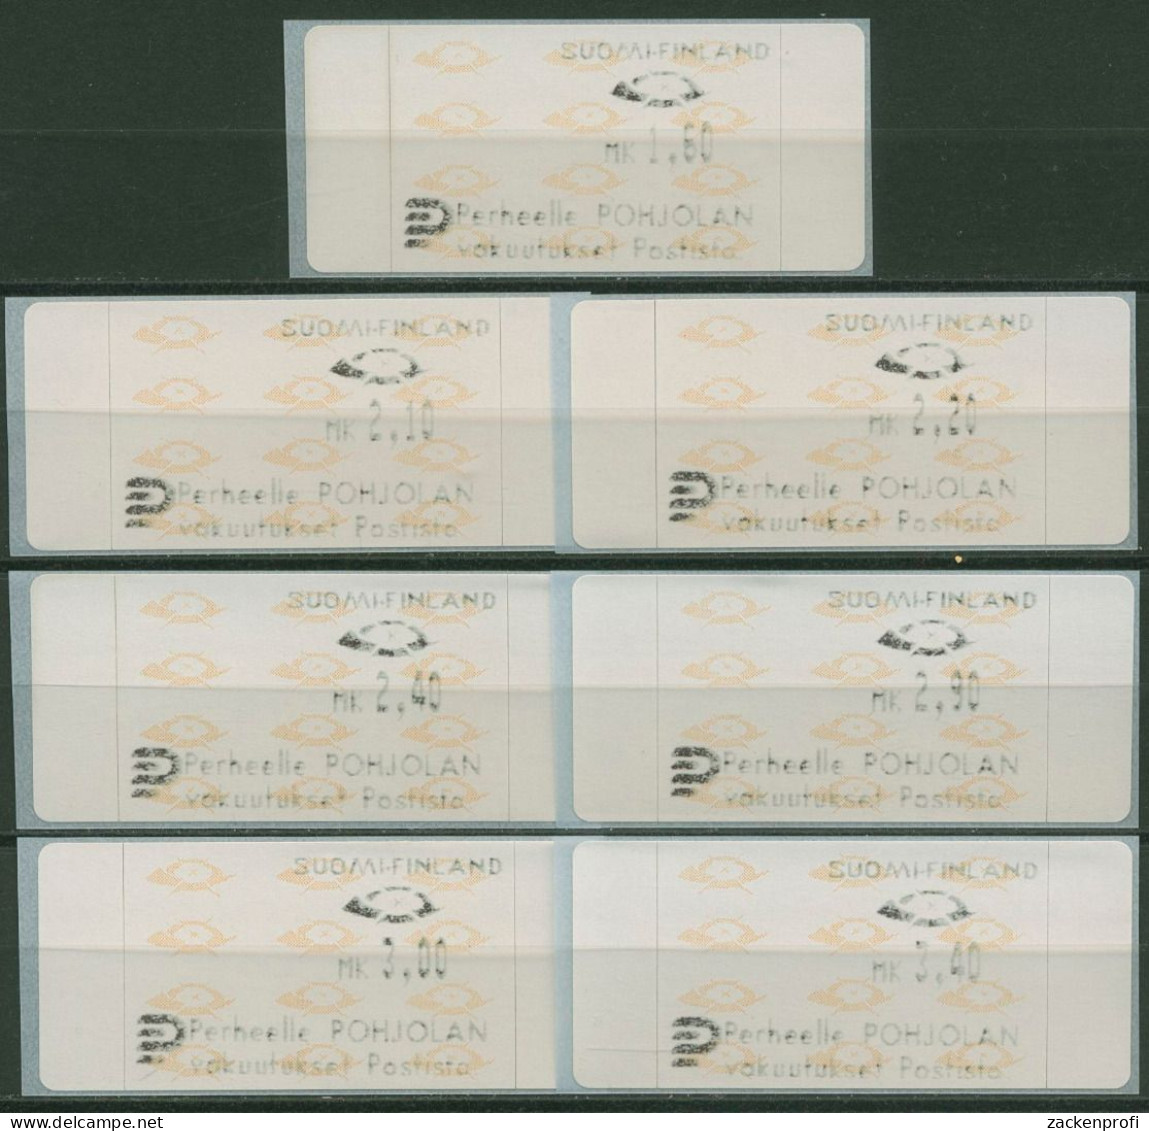 Finnland Automatenmarken 1992 Posthörner Satz 7 Werte ATM 12.3 S1 Postfrisch - Automaatzegels [ATM]